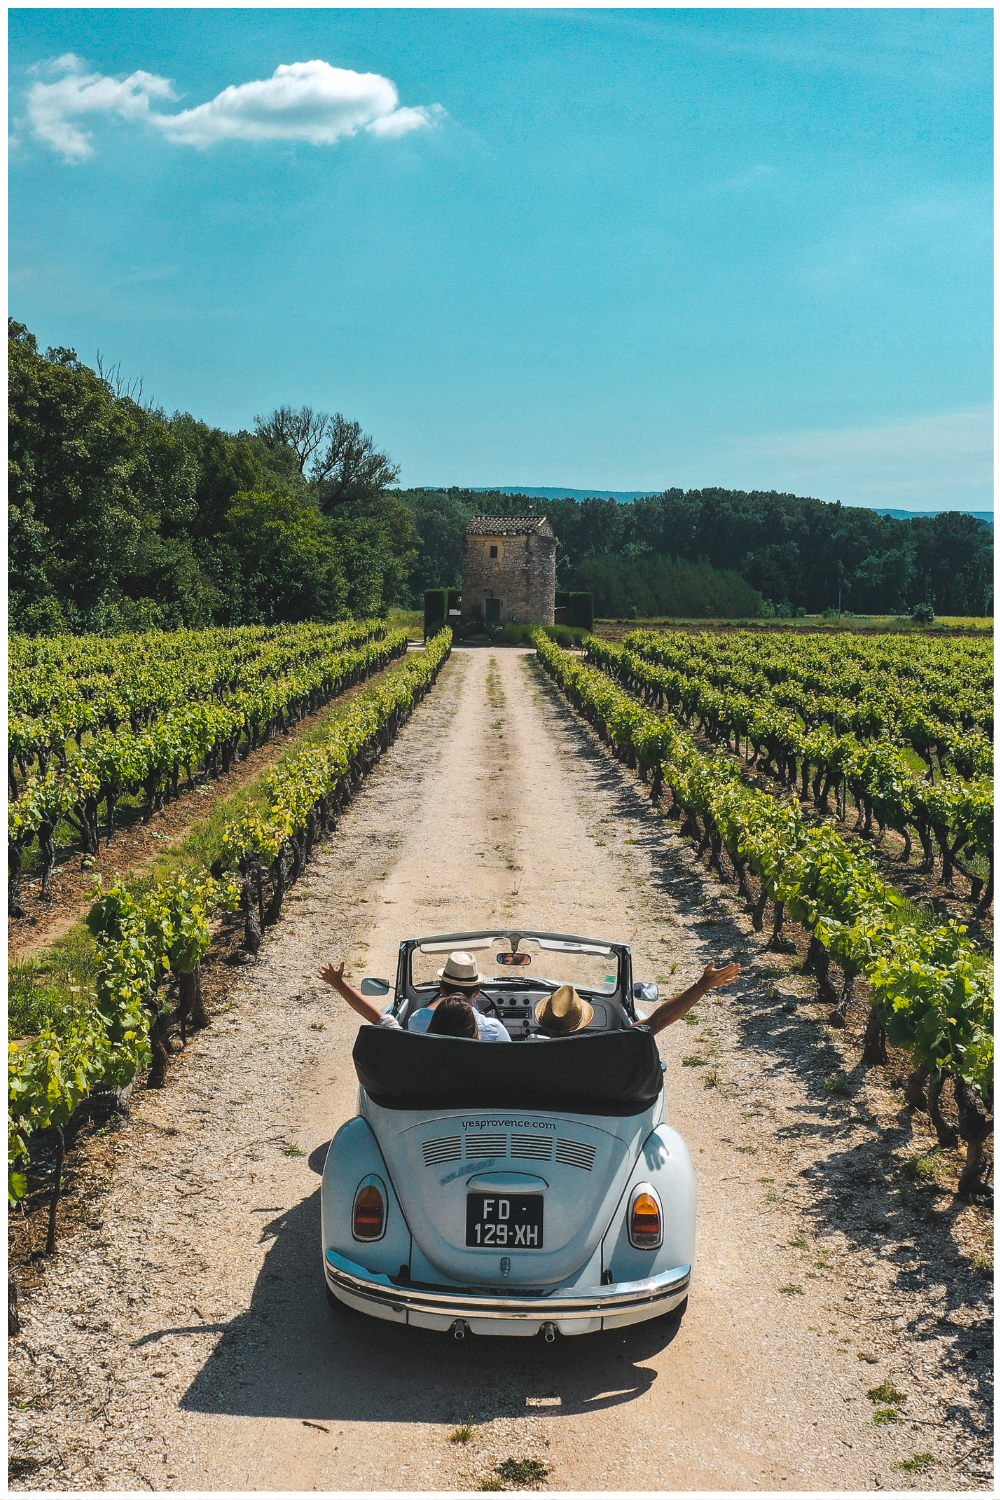 Location de voiture vintage en Provence